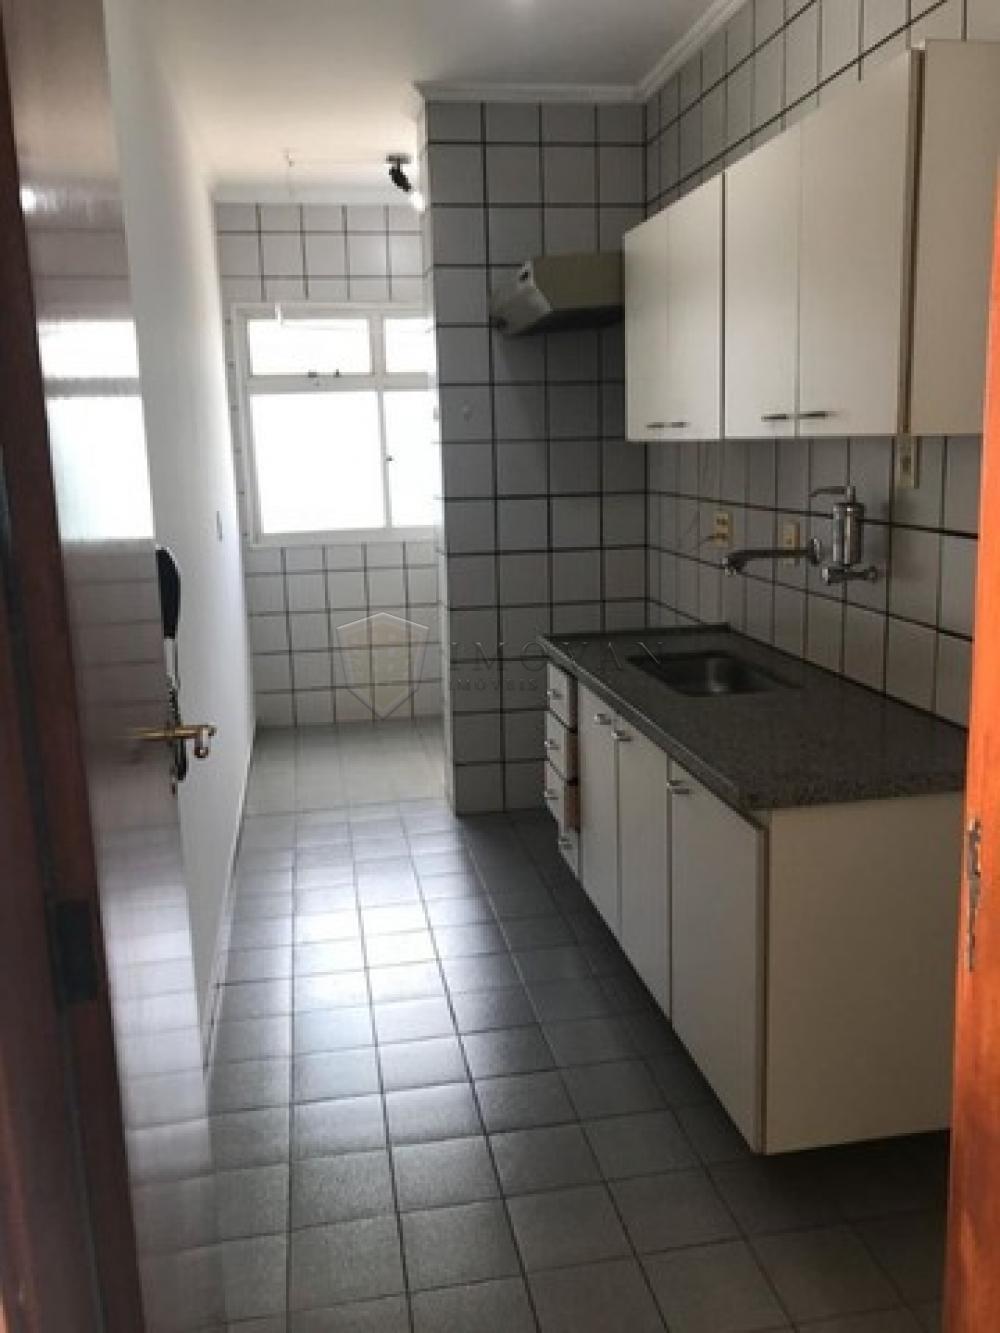 Comprar Apartamento / Padrão em Ribeirão Preto R$ 205.000,00 - Foto 2